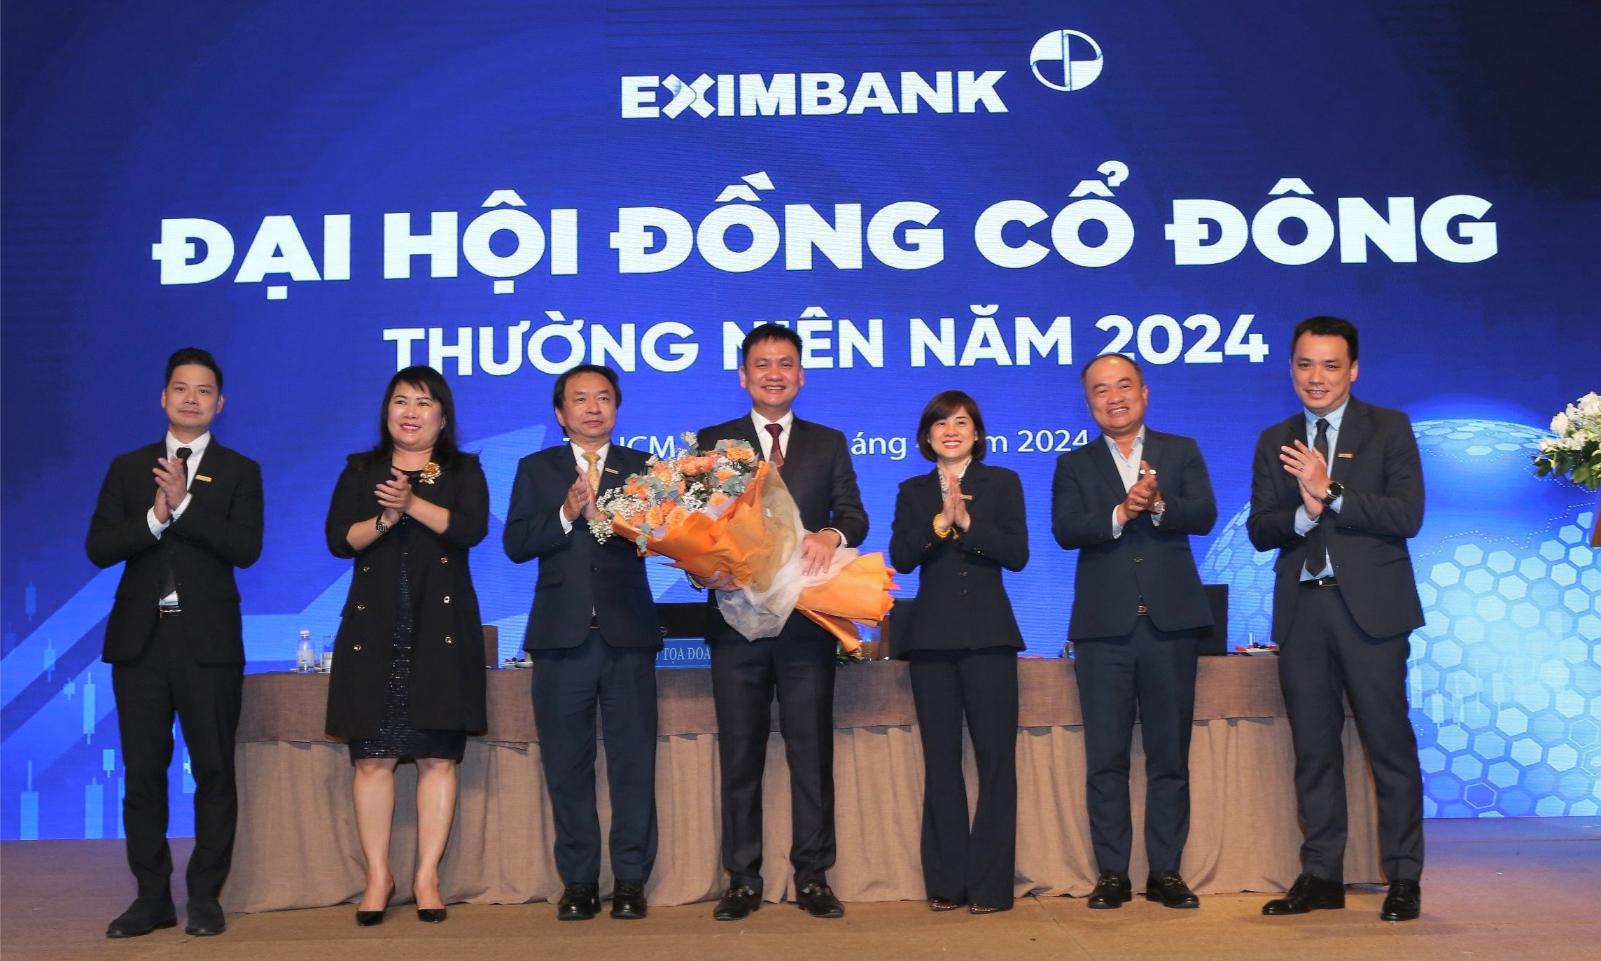 Cac Thanh Vien Hoi Dong Quan Tri Eximbank Nam 2024 2